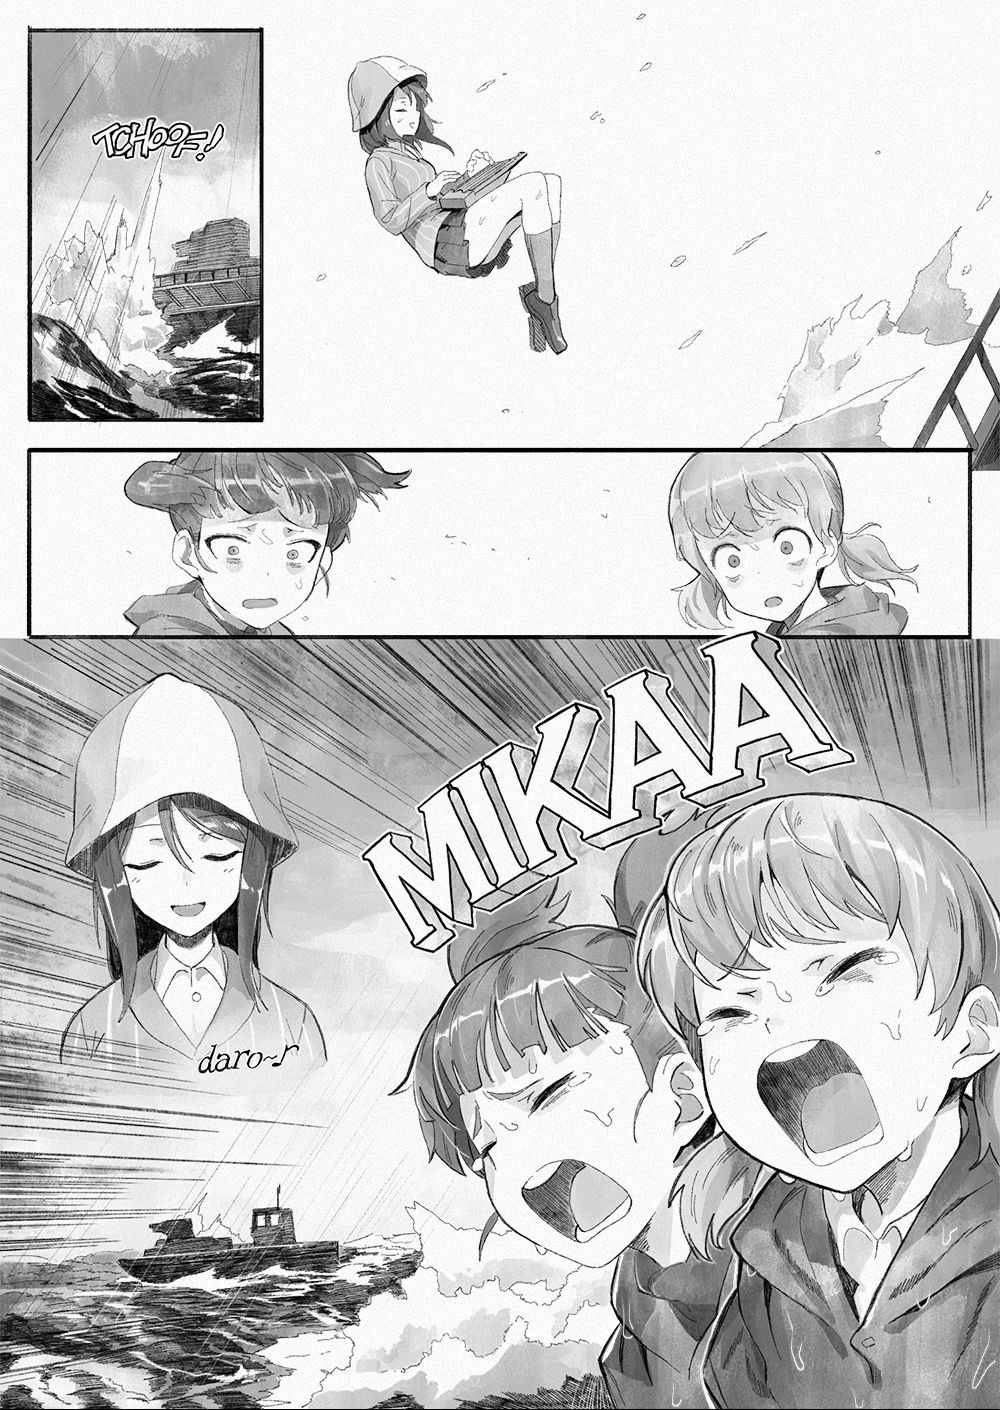 [反骨MAX] MIKA, arrived in the Schoolship of Anzio (ガールズ&パンツァー)